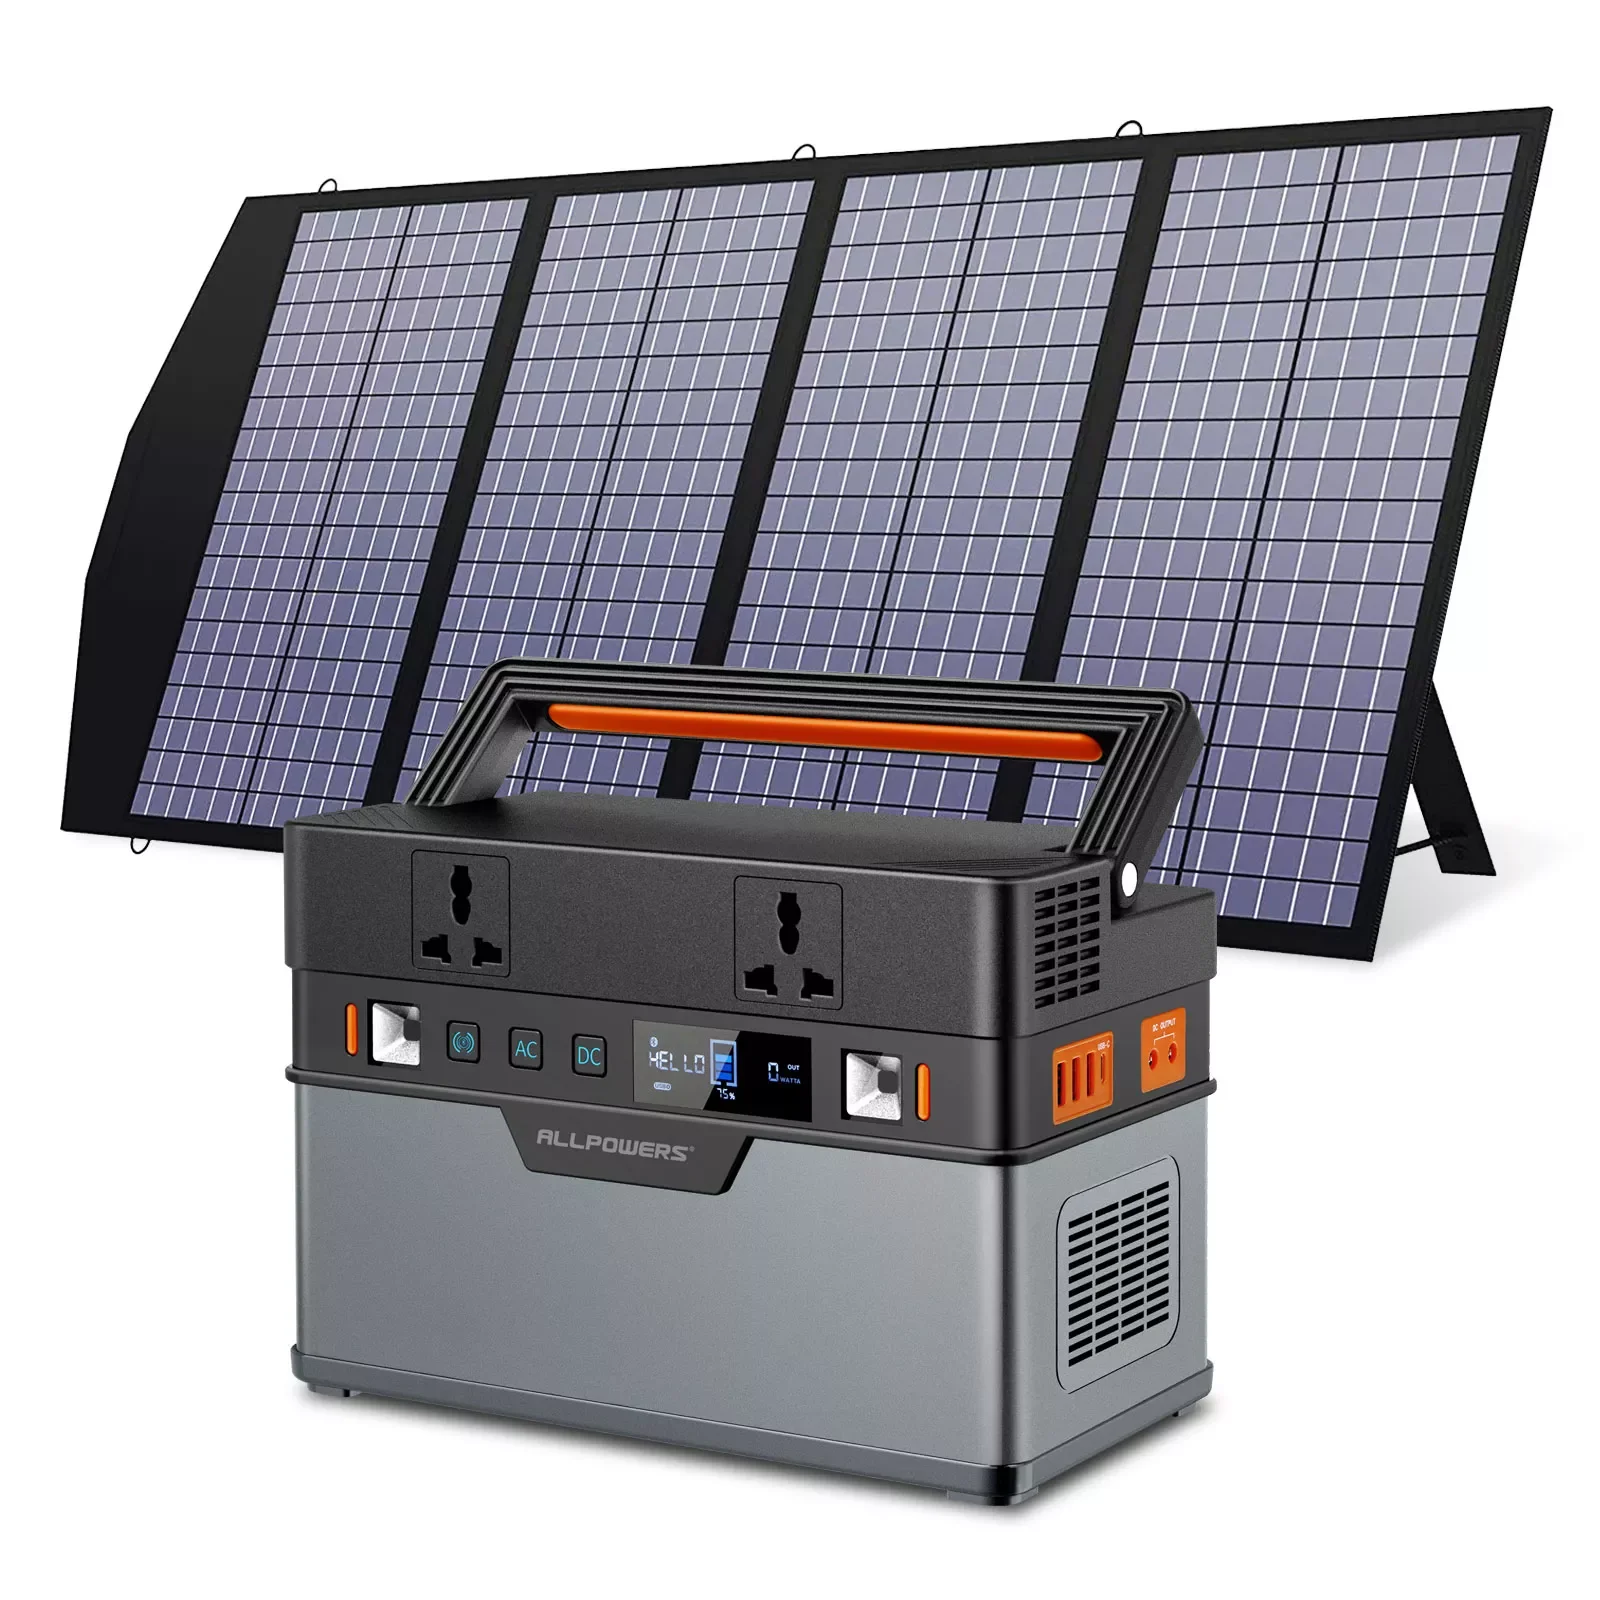 

2023New ALL POWER S солнечный генератор, портативная электростанция 110 В/220 В, мобильная аварийная Резервная мощность с 18 в складной солнечной панель...